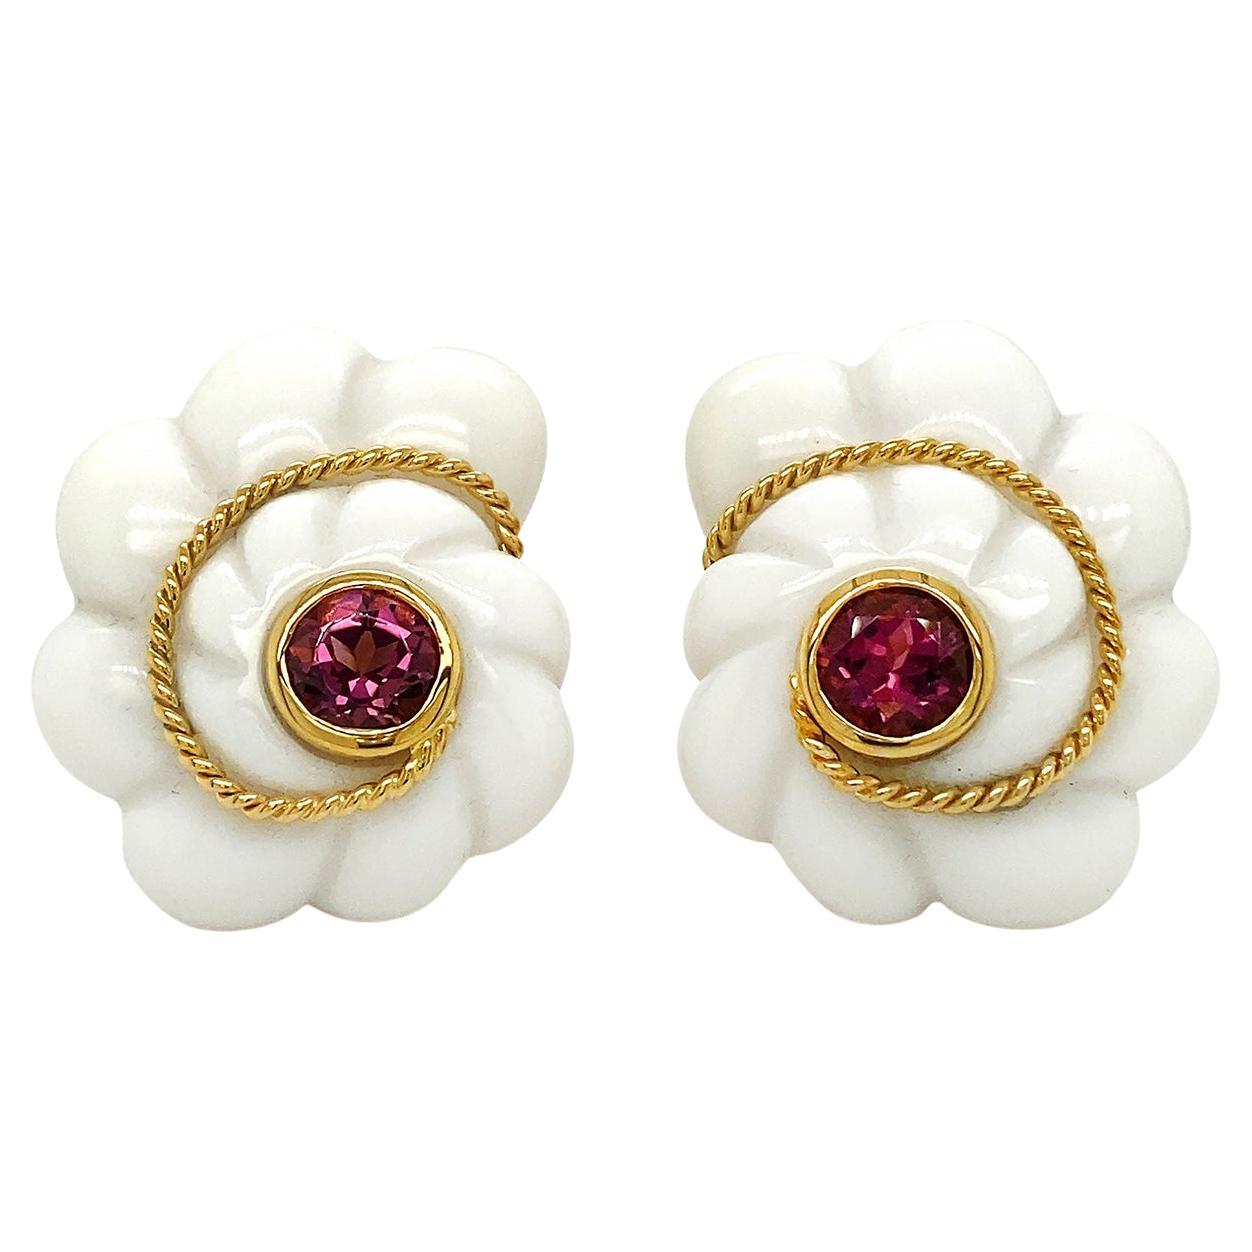 Boucles d'oreilles festonnées en or jaune 18 carats, opale blanche, tourmaline rose et coquillage